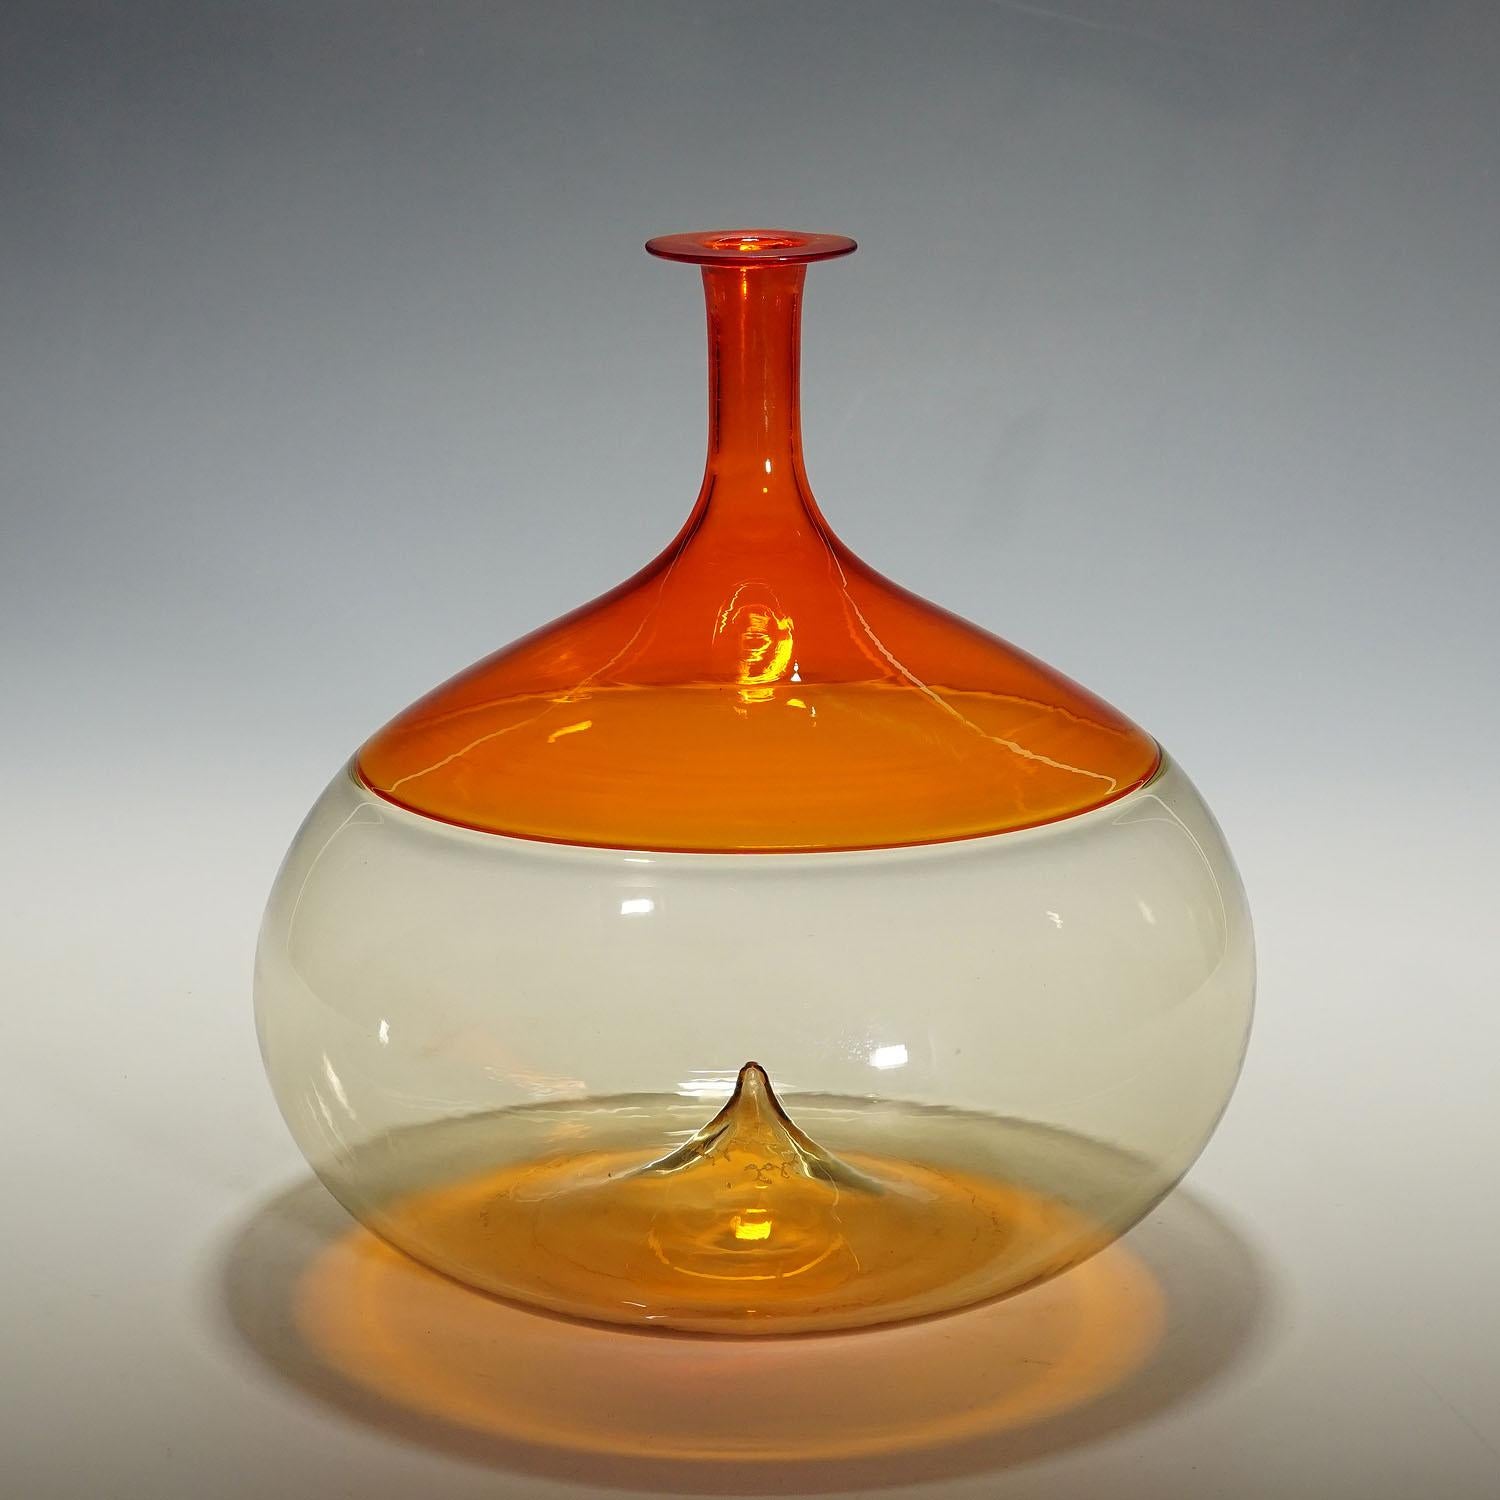 Vintage Murano Art of Vintage vase 'Bolle' by Tapio Wirkkala for Venini

Un vase en verre d'art vintage de la série 'Bolle'. Verre rouge et paille finement soufflé à la bouche et fusionné selon la technique incalmo. Conçue par Tapio Wirkkala en 1966